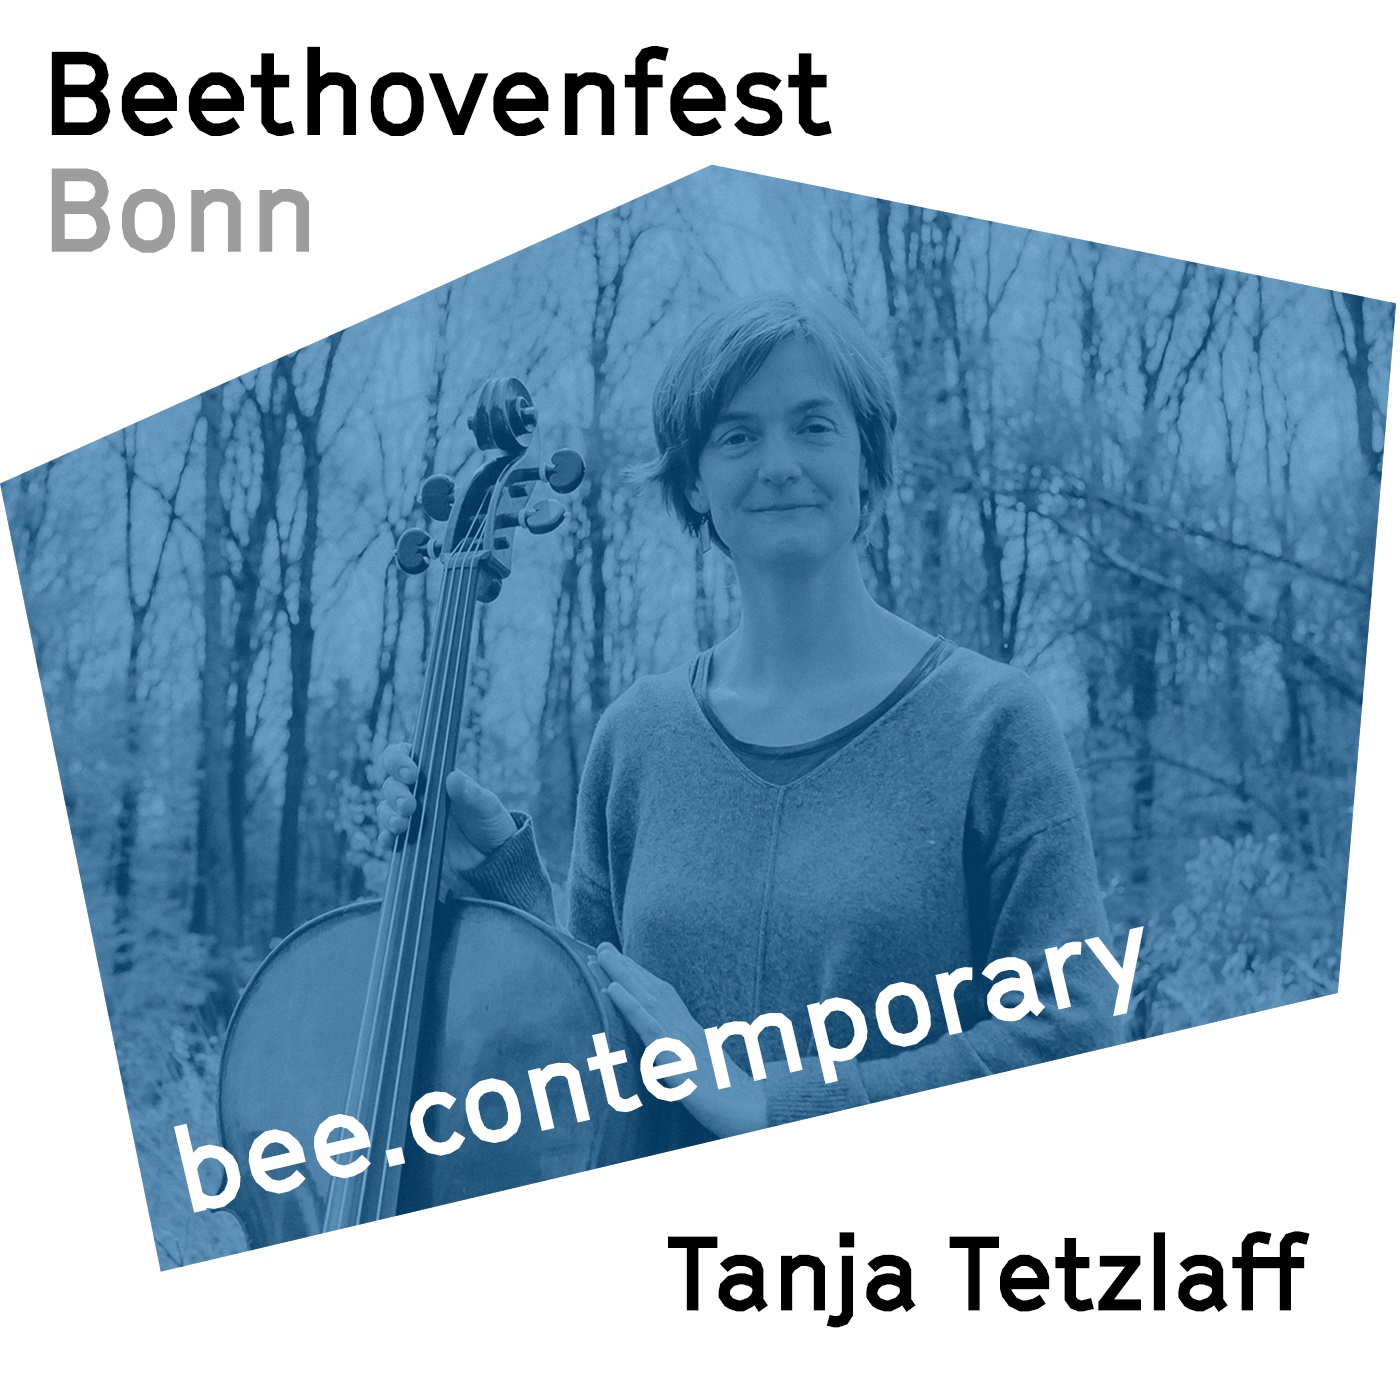 Tanja Tetzlaff, wie spielt sich das Cello auf einem Gletscher?